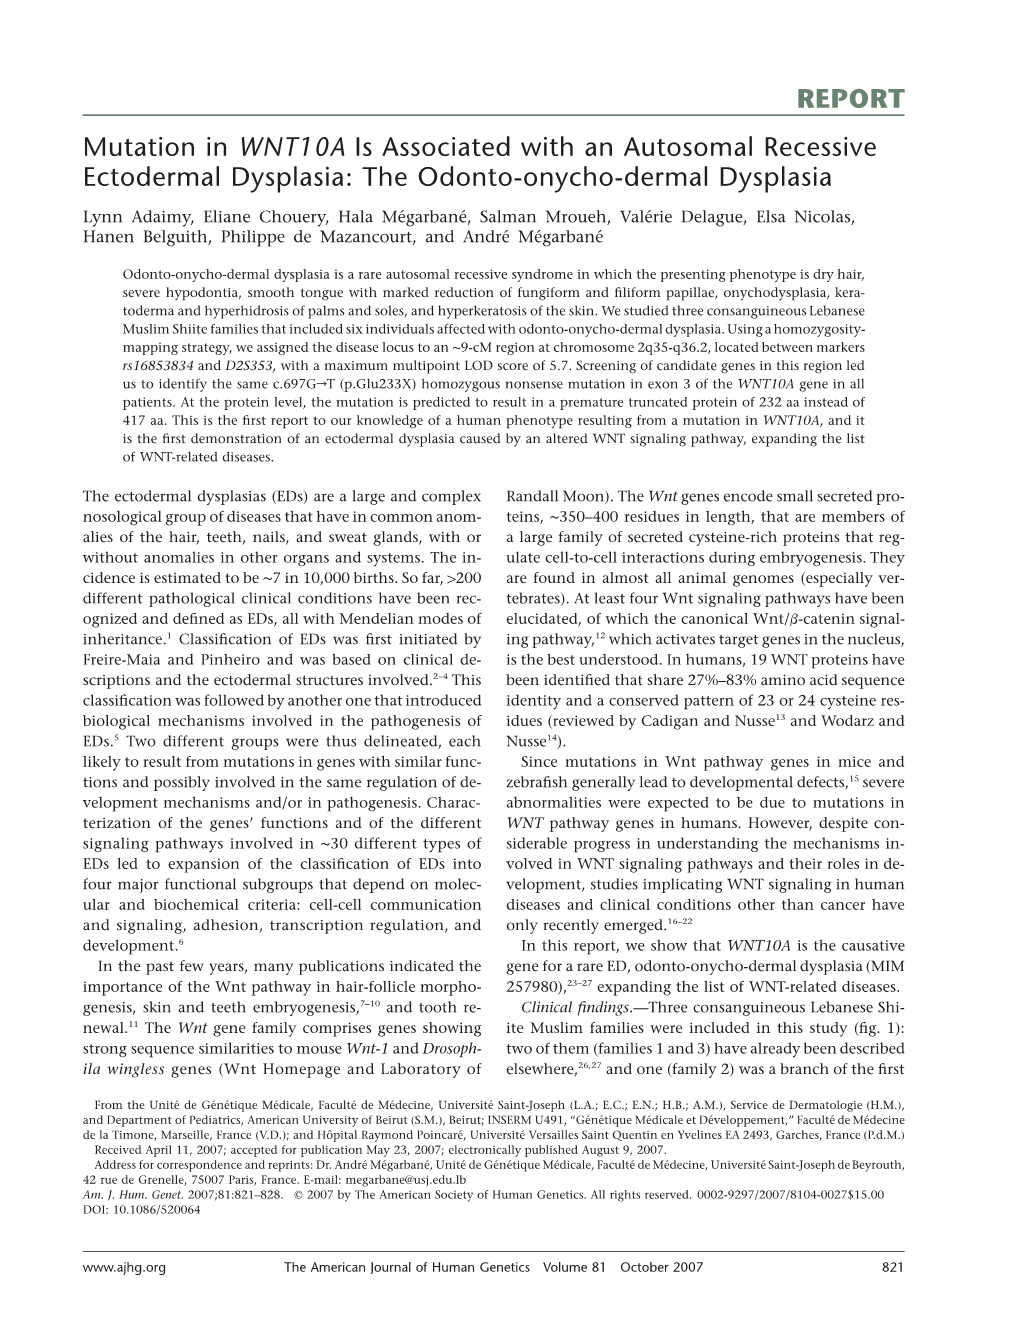 The Odonto-Onycho-Dermal Dysplasia